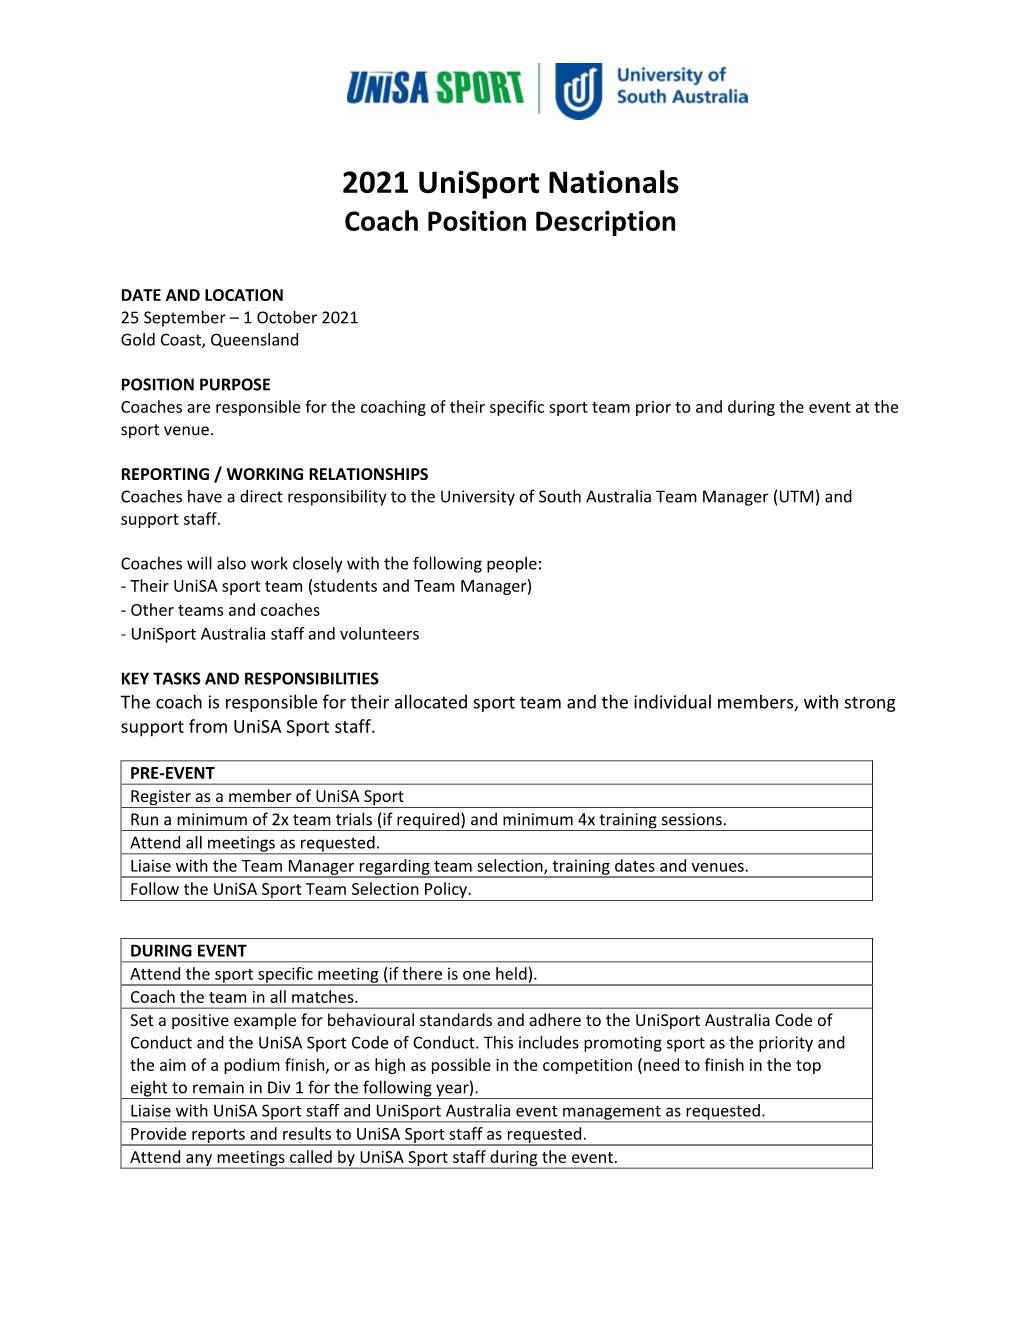 2021 Unisport Nationals Coach Position Description